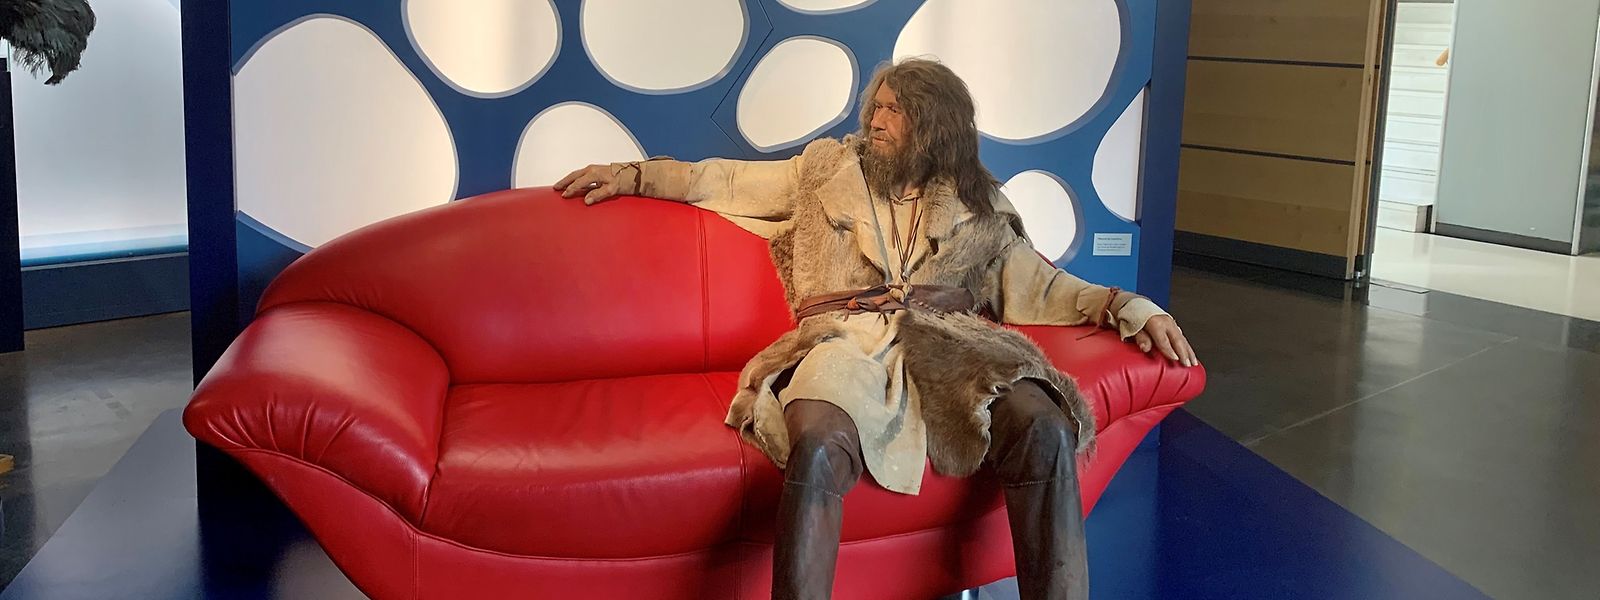 Les collections temporaires se succèdent mais l'homme de Néandertal assis sur le canapé au départ de toute visite est toujours prêt à poser, avec ou sans vous.